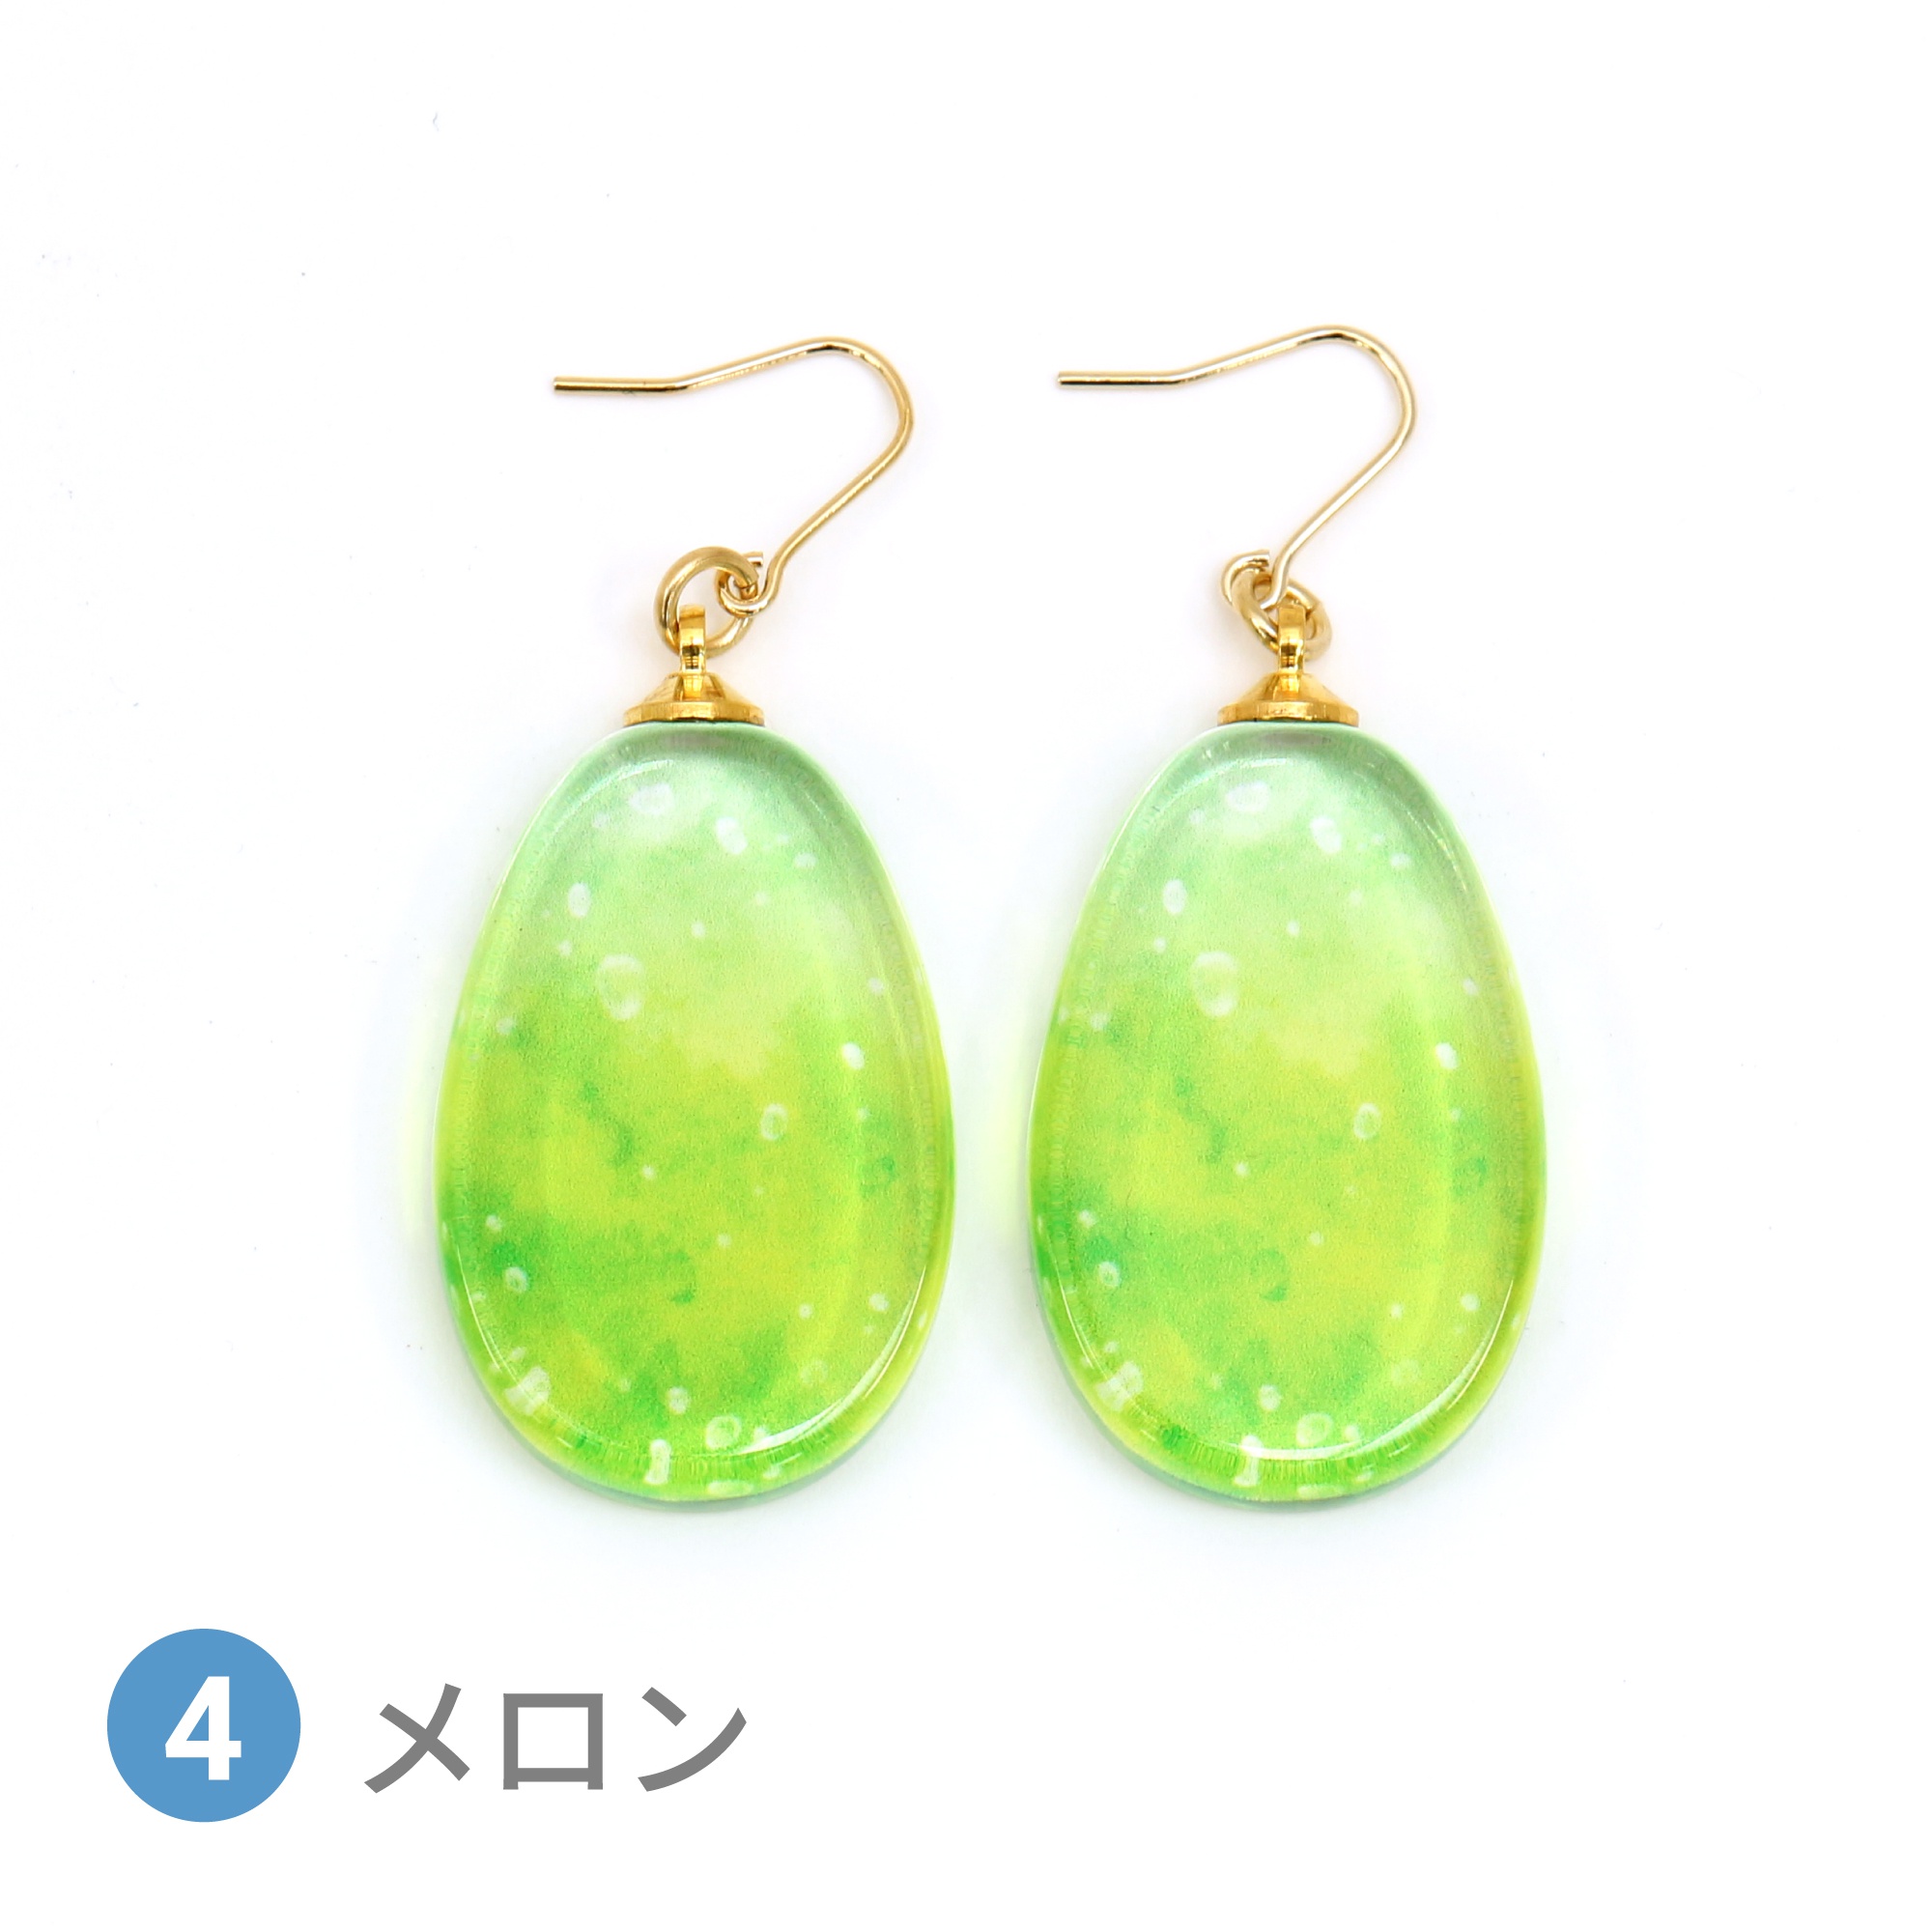 Glass accessories Pierced Earring SODA melon drop shape